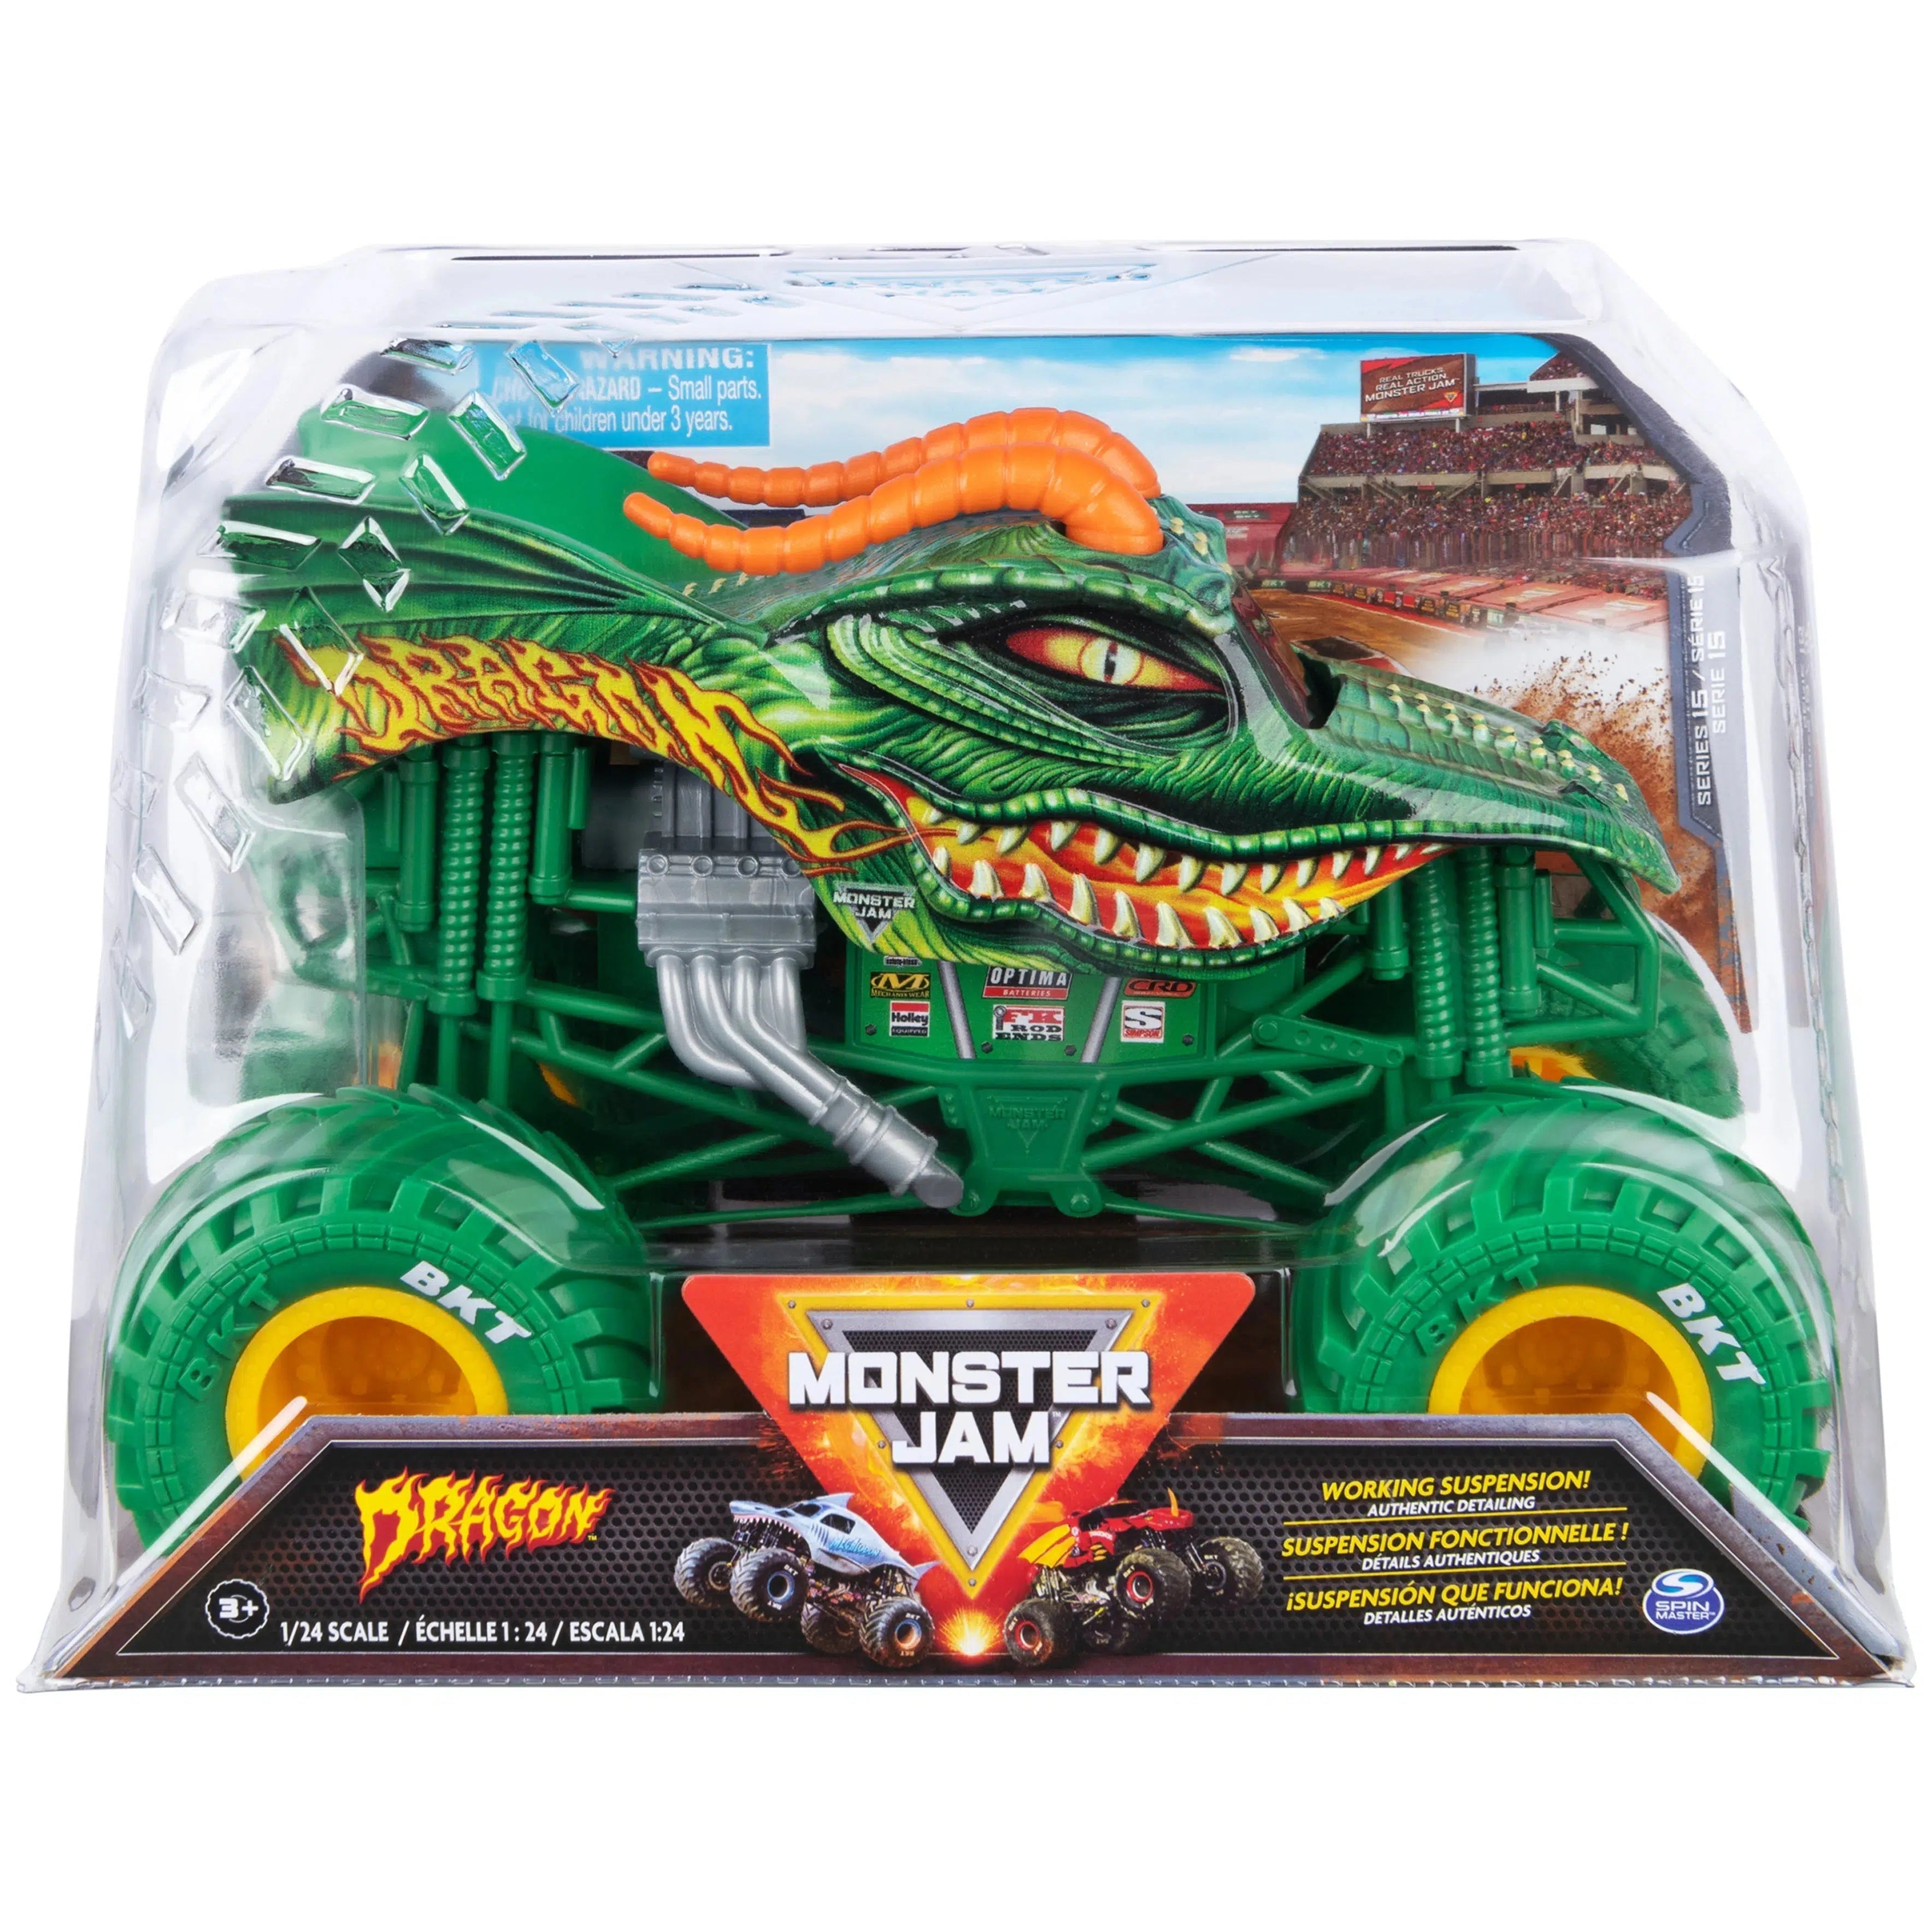 Spin Master-Monster Jam, 1:24 Scale Monster Truck-20136907-Dragon-Legacy Toys